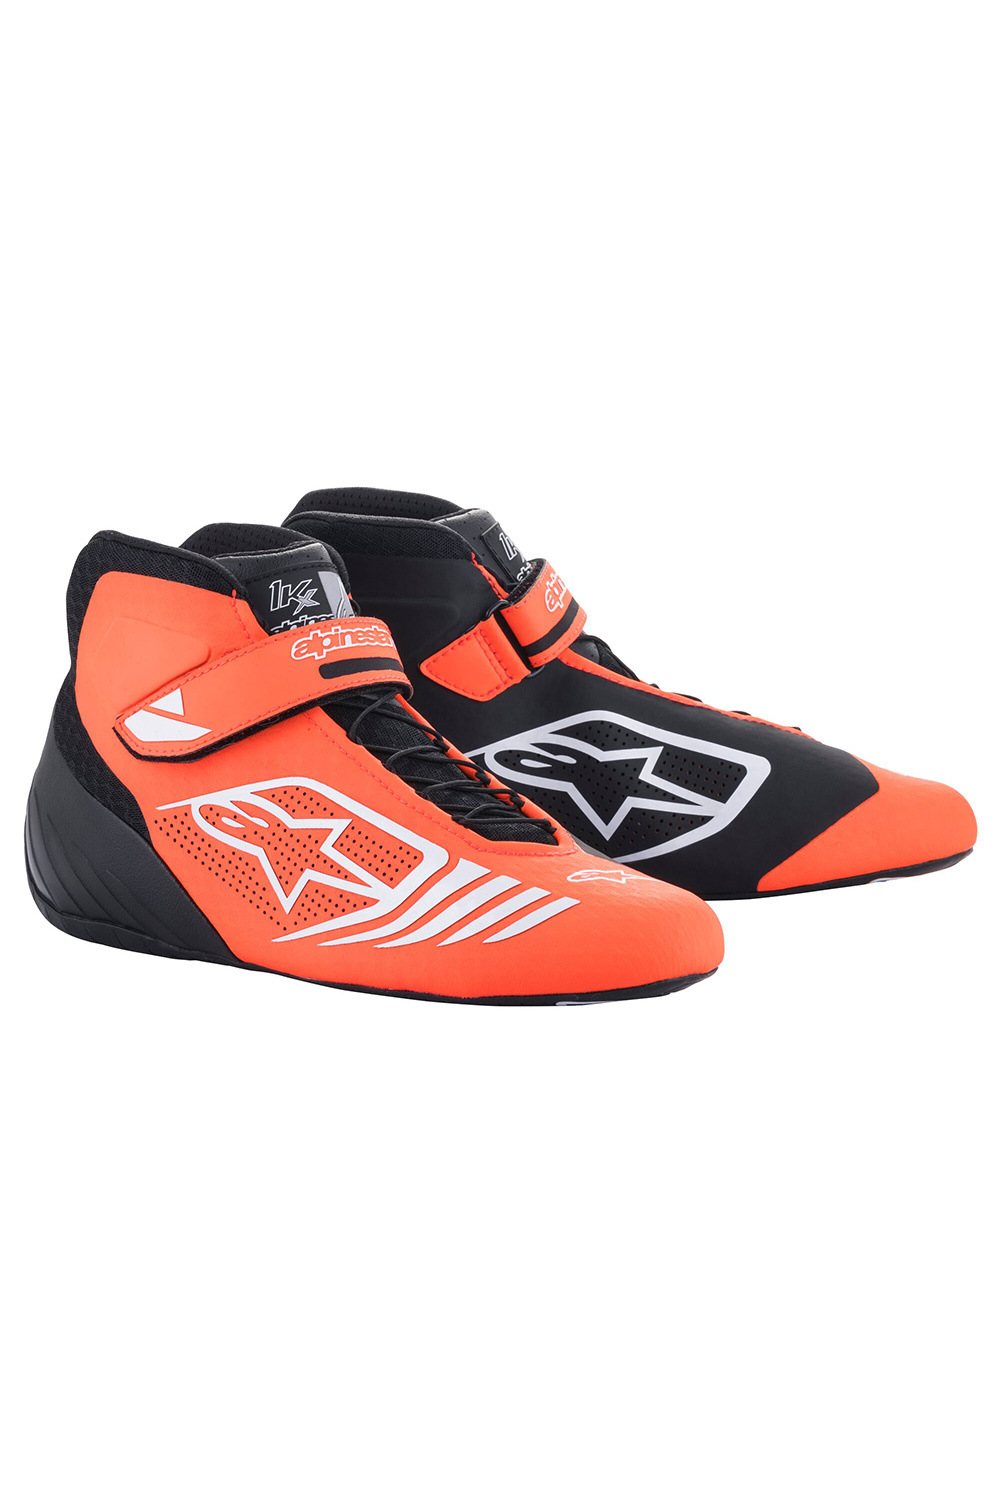 Orange-Weiß KX | Schwarz-Fluo Racing - Tech-1 | | Schuhe Alpinestars Fashion